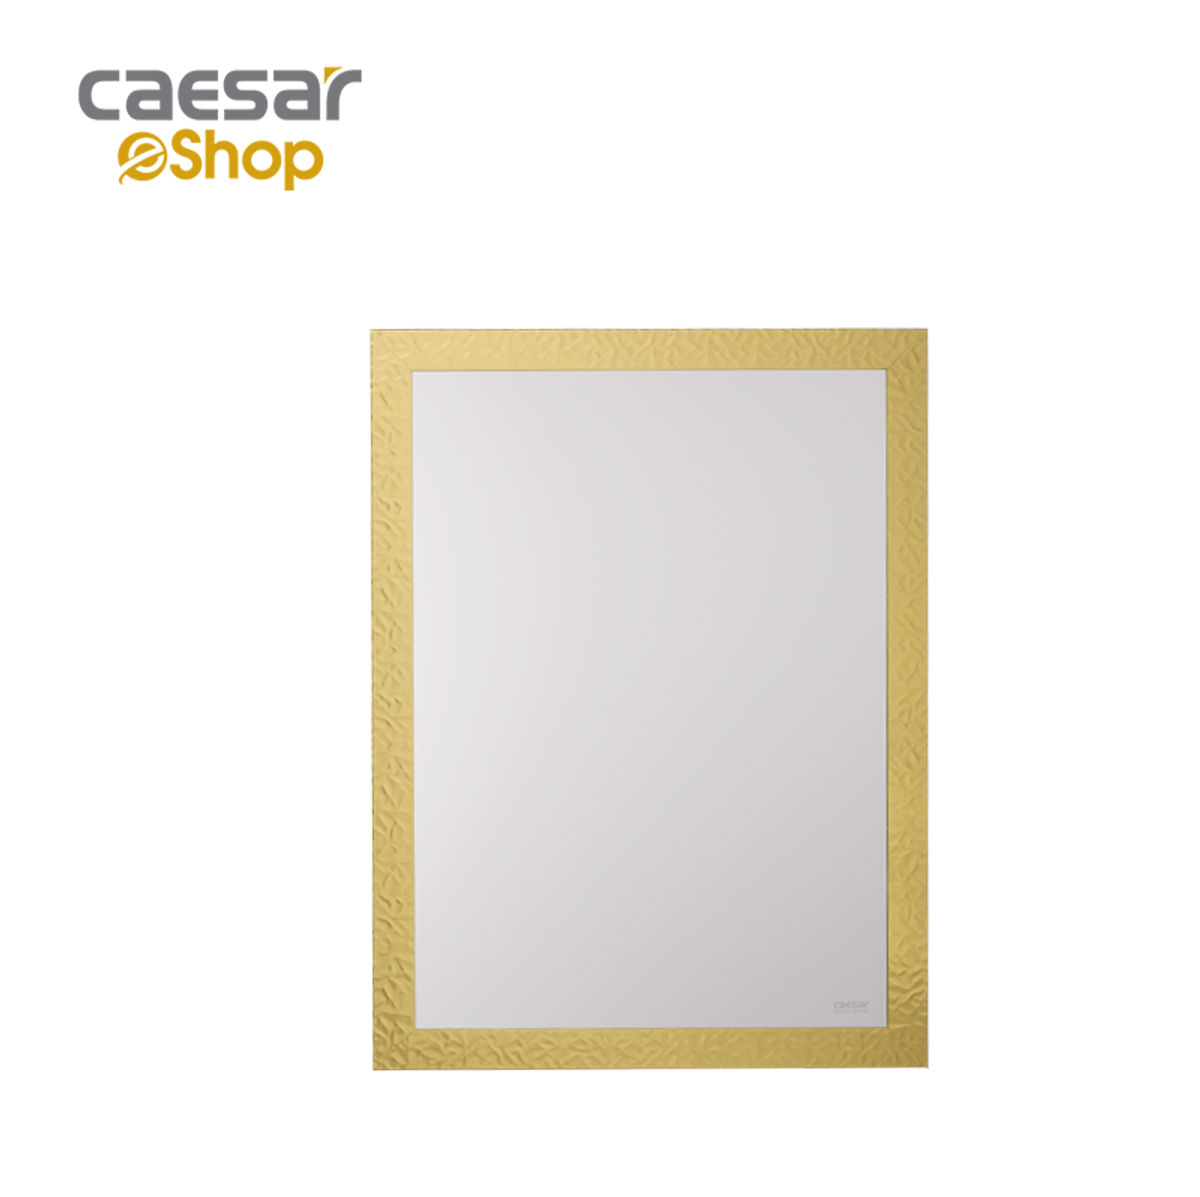 Gương tự động thông minh M833 tại Caesar Official Store sẽ là lựa chọn hoàn hảo cho những người đam mê công nghệ. Với khả năng điều chỉnh ánh sáng, cộng hưởng với khung nhựa sơn tĩnh điện, gương này sẽ là một điểm nhấn tuyệt vời cho phòng tắm của bạn.